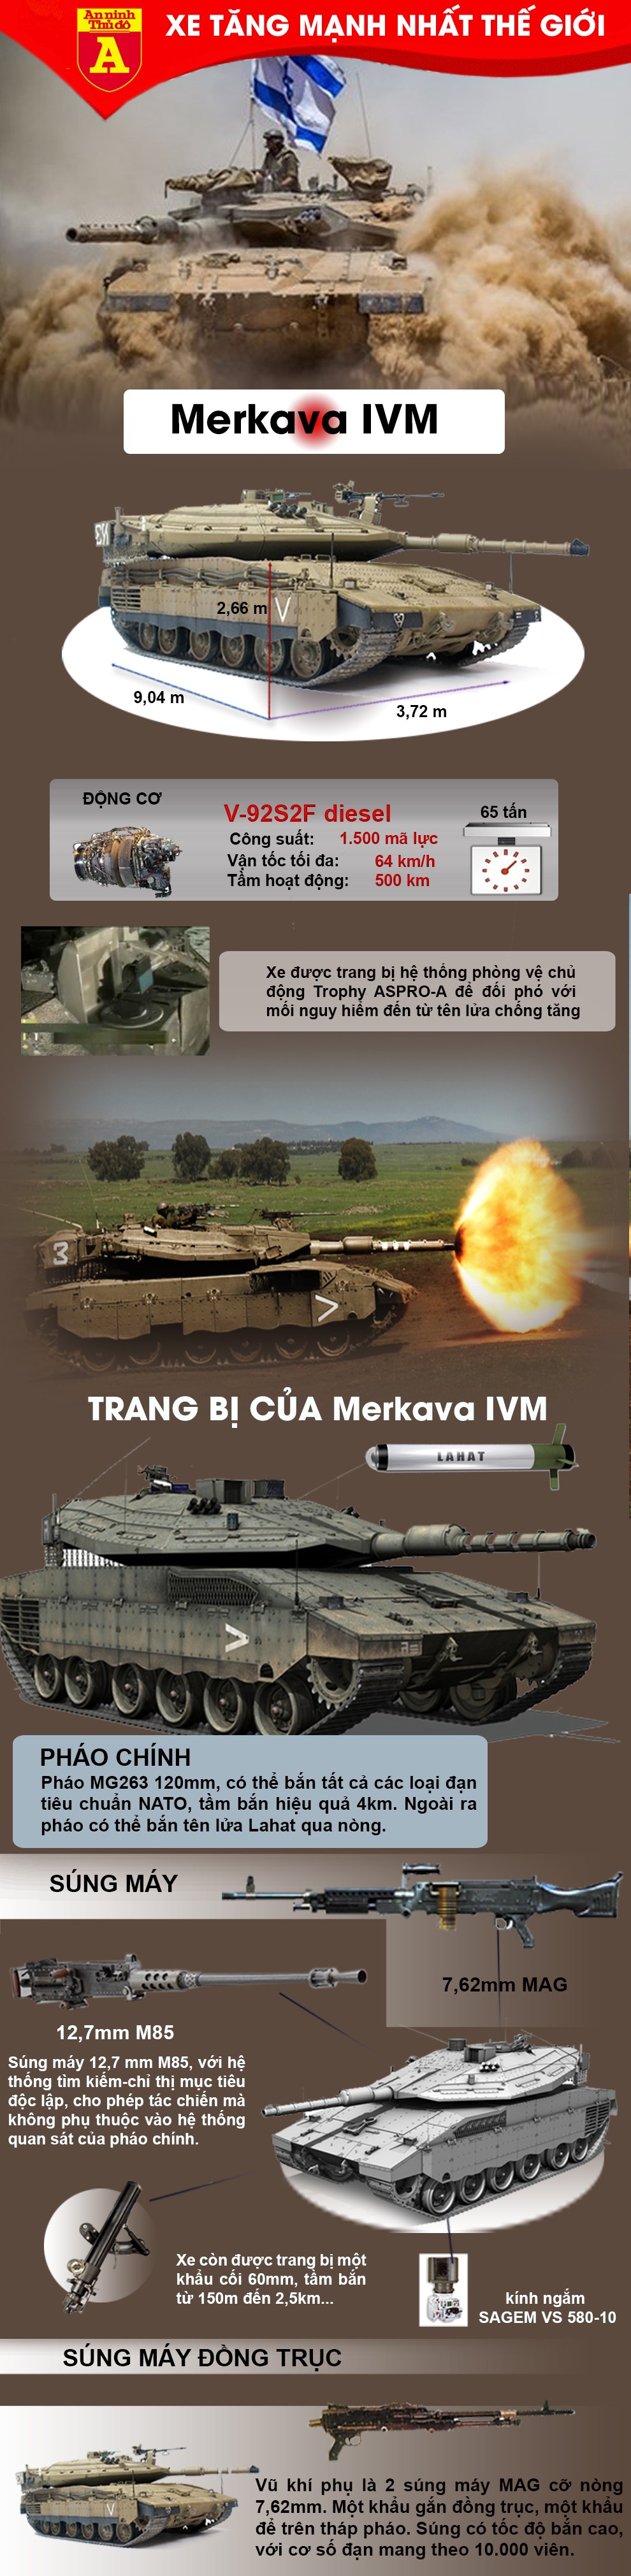 [Infographic] Tại sao xe tăng của Israel lại vượt mặt Nga, Mỹ để trở thành "vua lục quân" trên chiến trường? ảnh 4